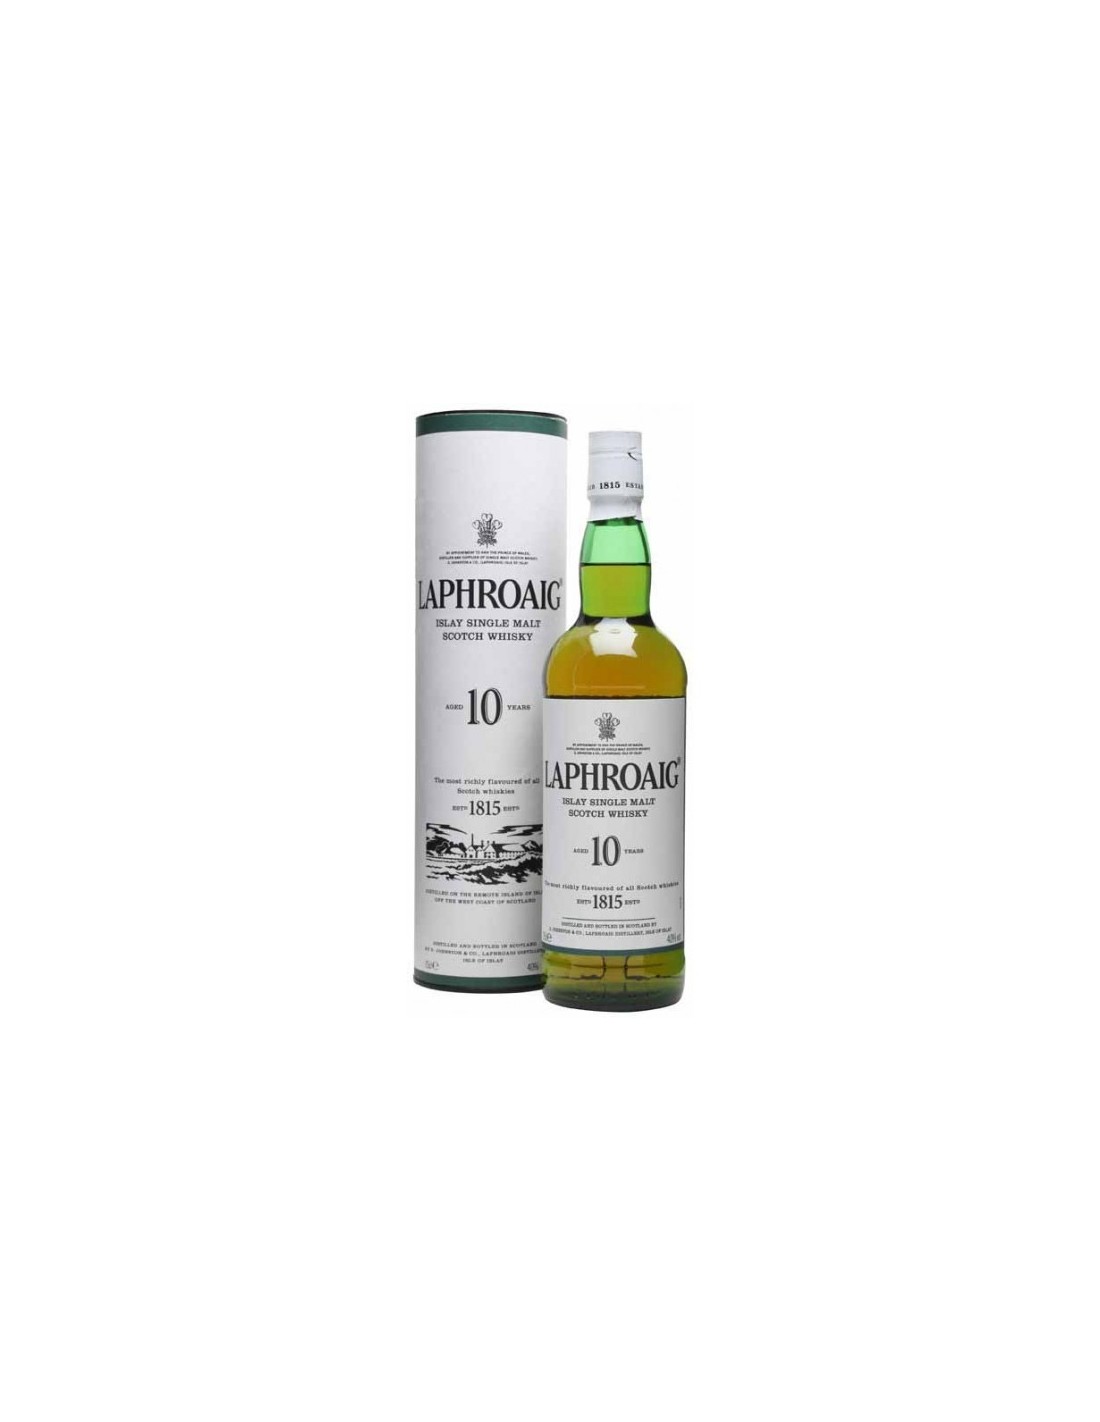 Whisky Laphroaig, 0.7L, 40% alc., Scotia alcooldiscount.ro